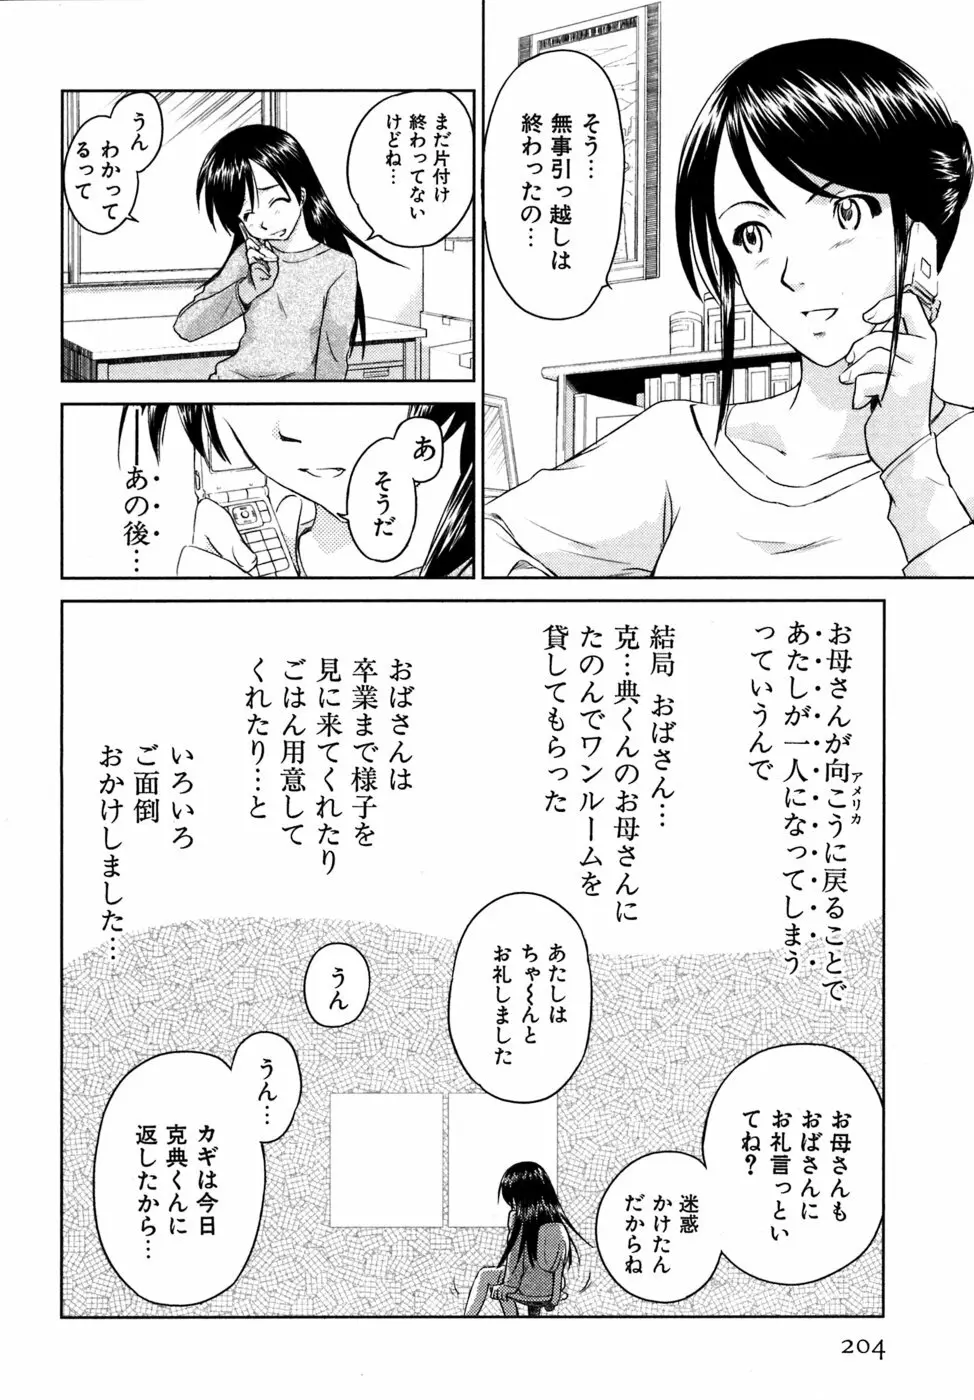 小あくま天使桃色系 03 205ページ